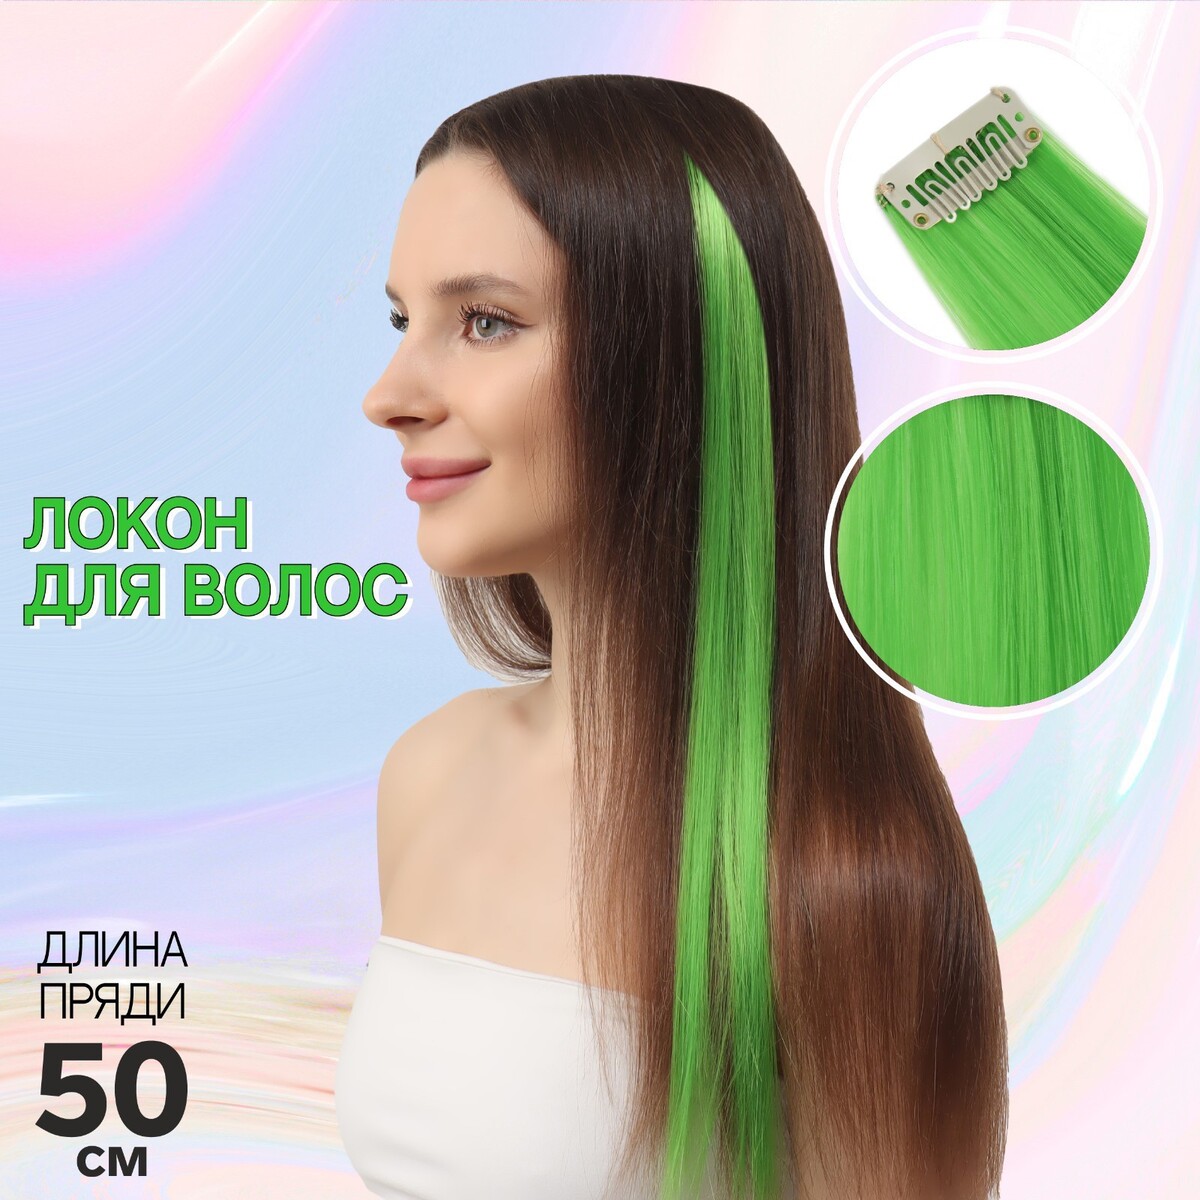 Локон накладной, прямой волос, на заколке, 50 см, 5 гр, цвет зеленый локон накладной прямой волос на заколке 50 см 5 гр красный